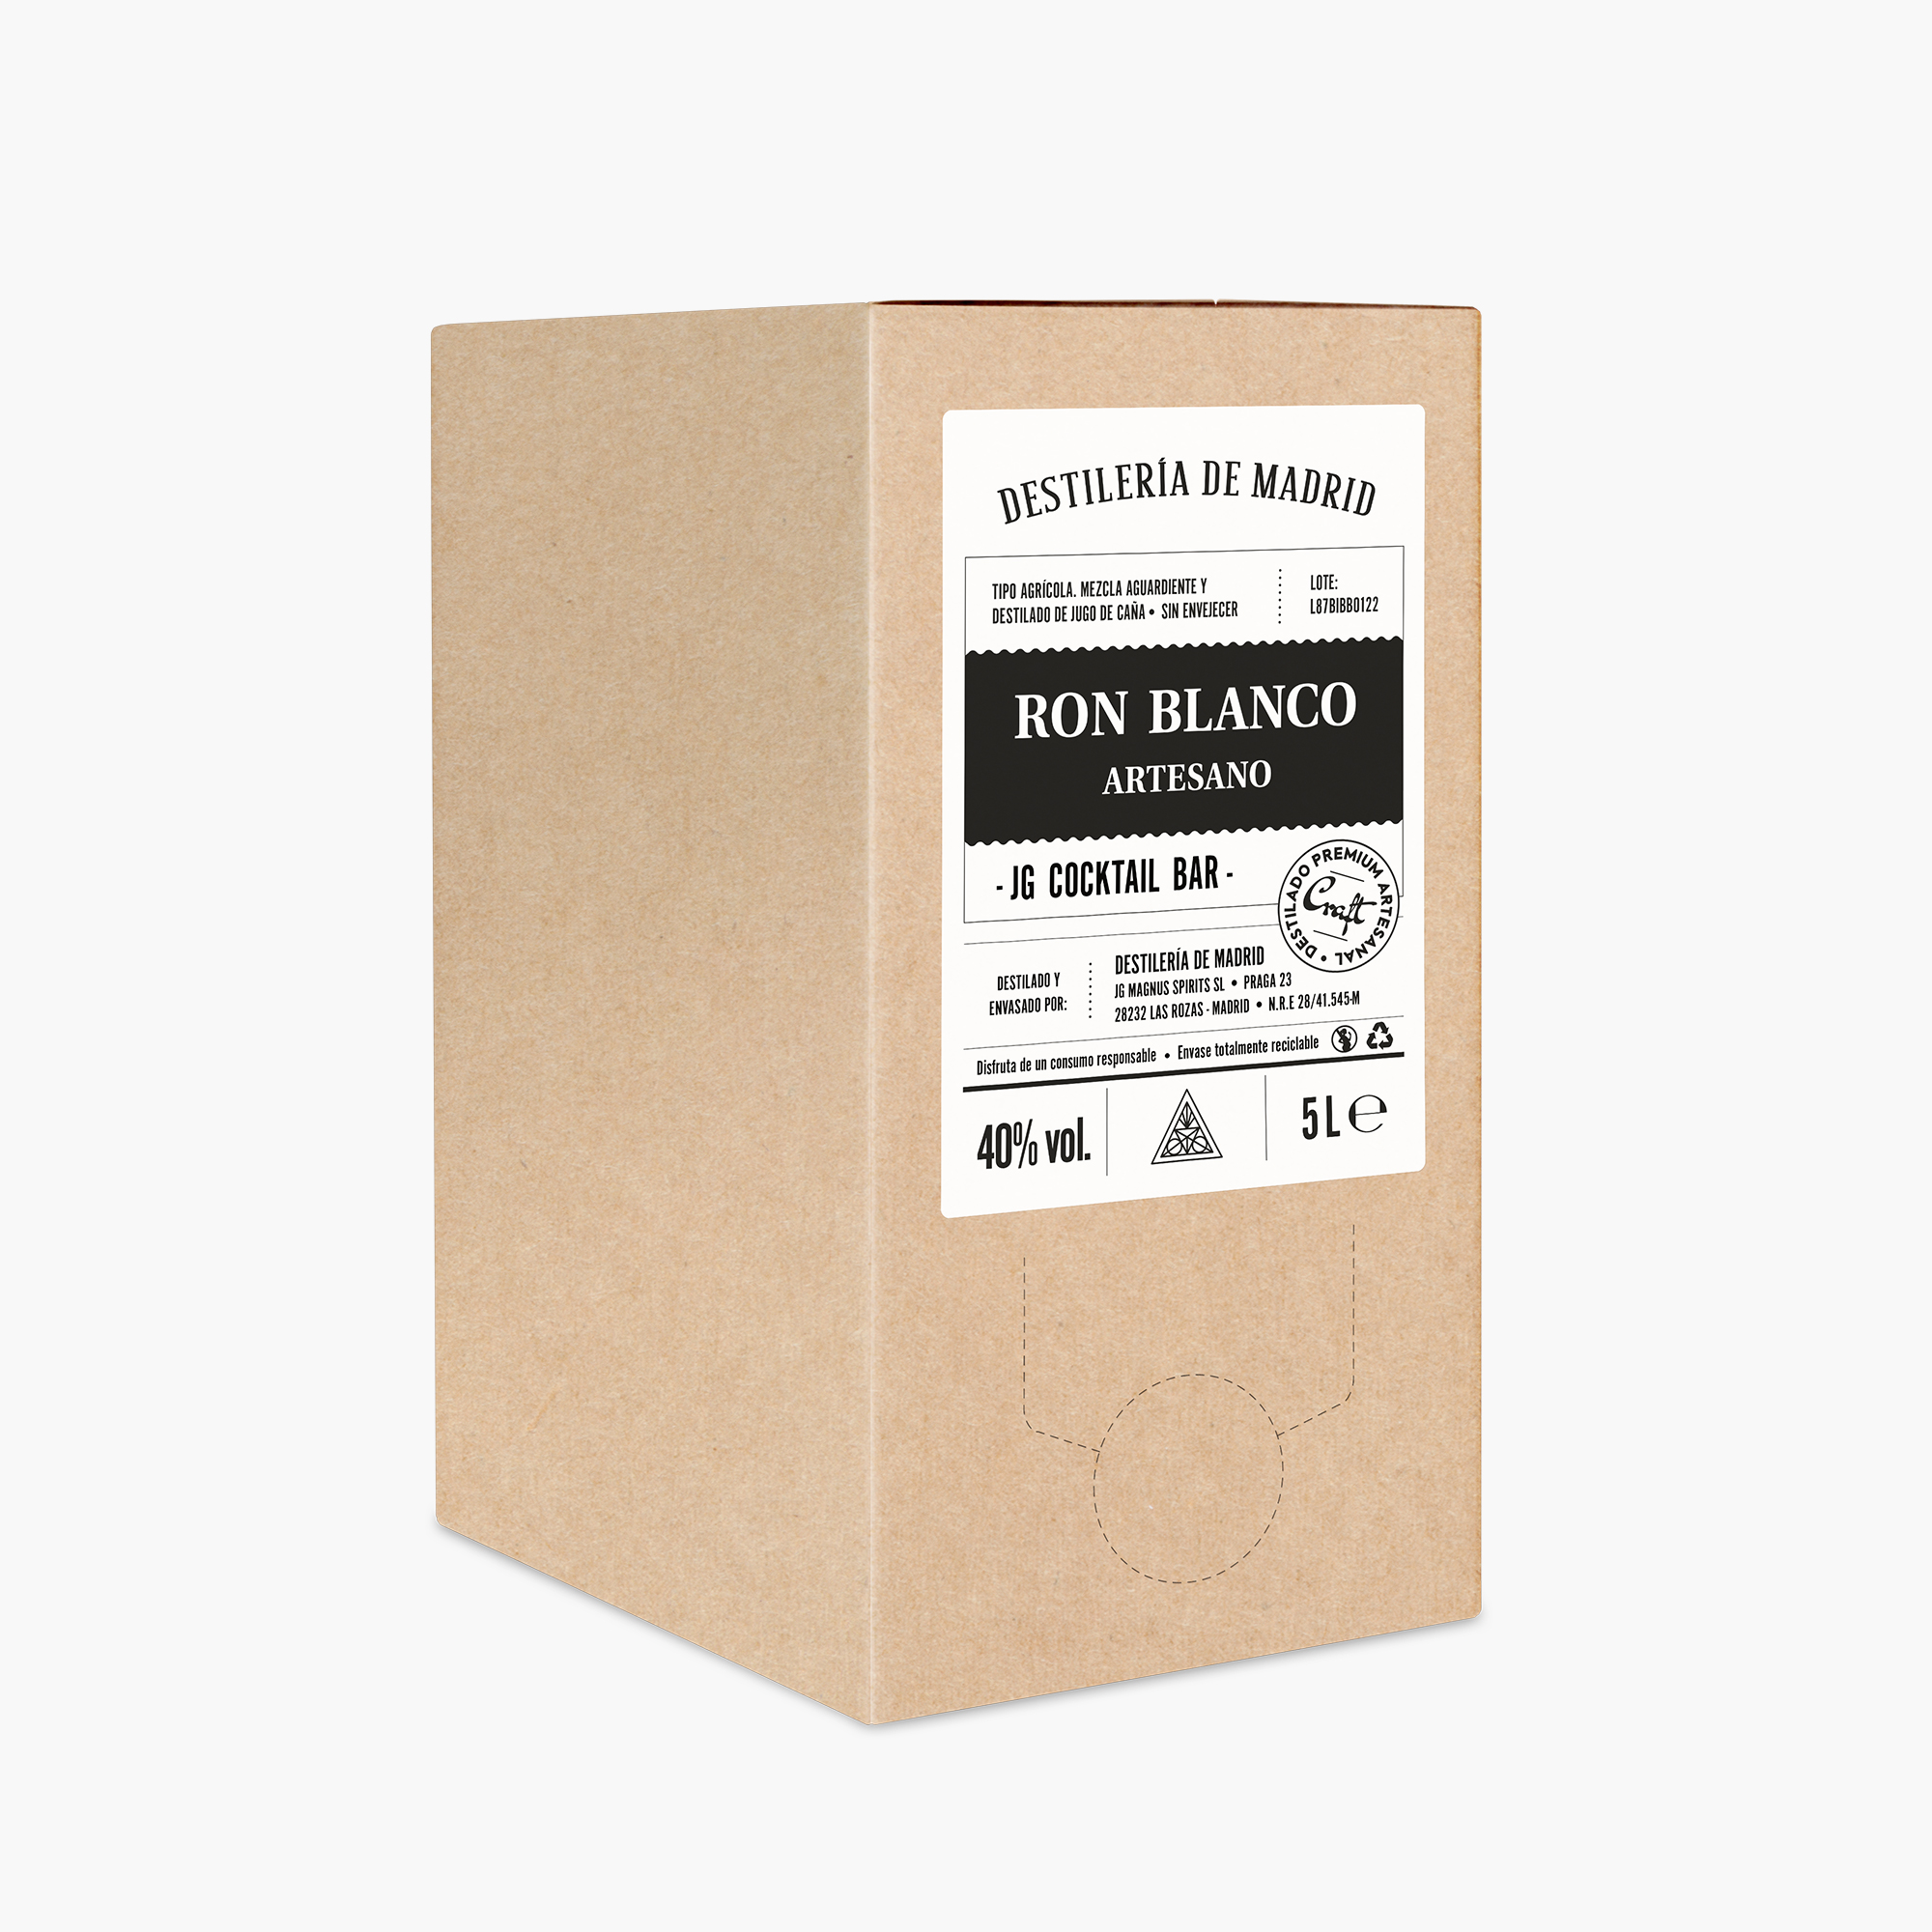 RON BLANCO ARTESANO - BAG IN BOX